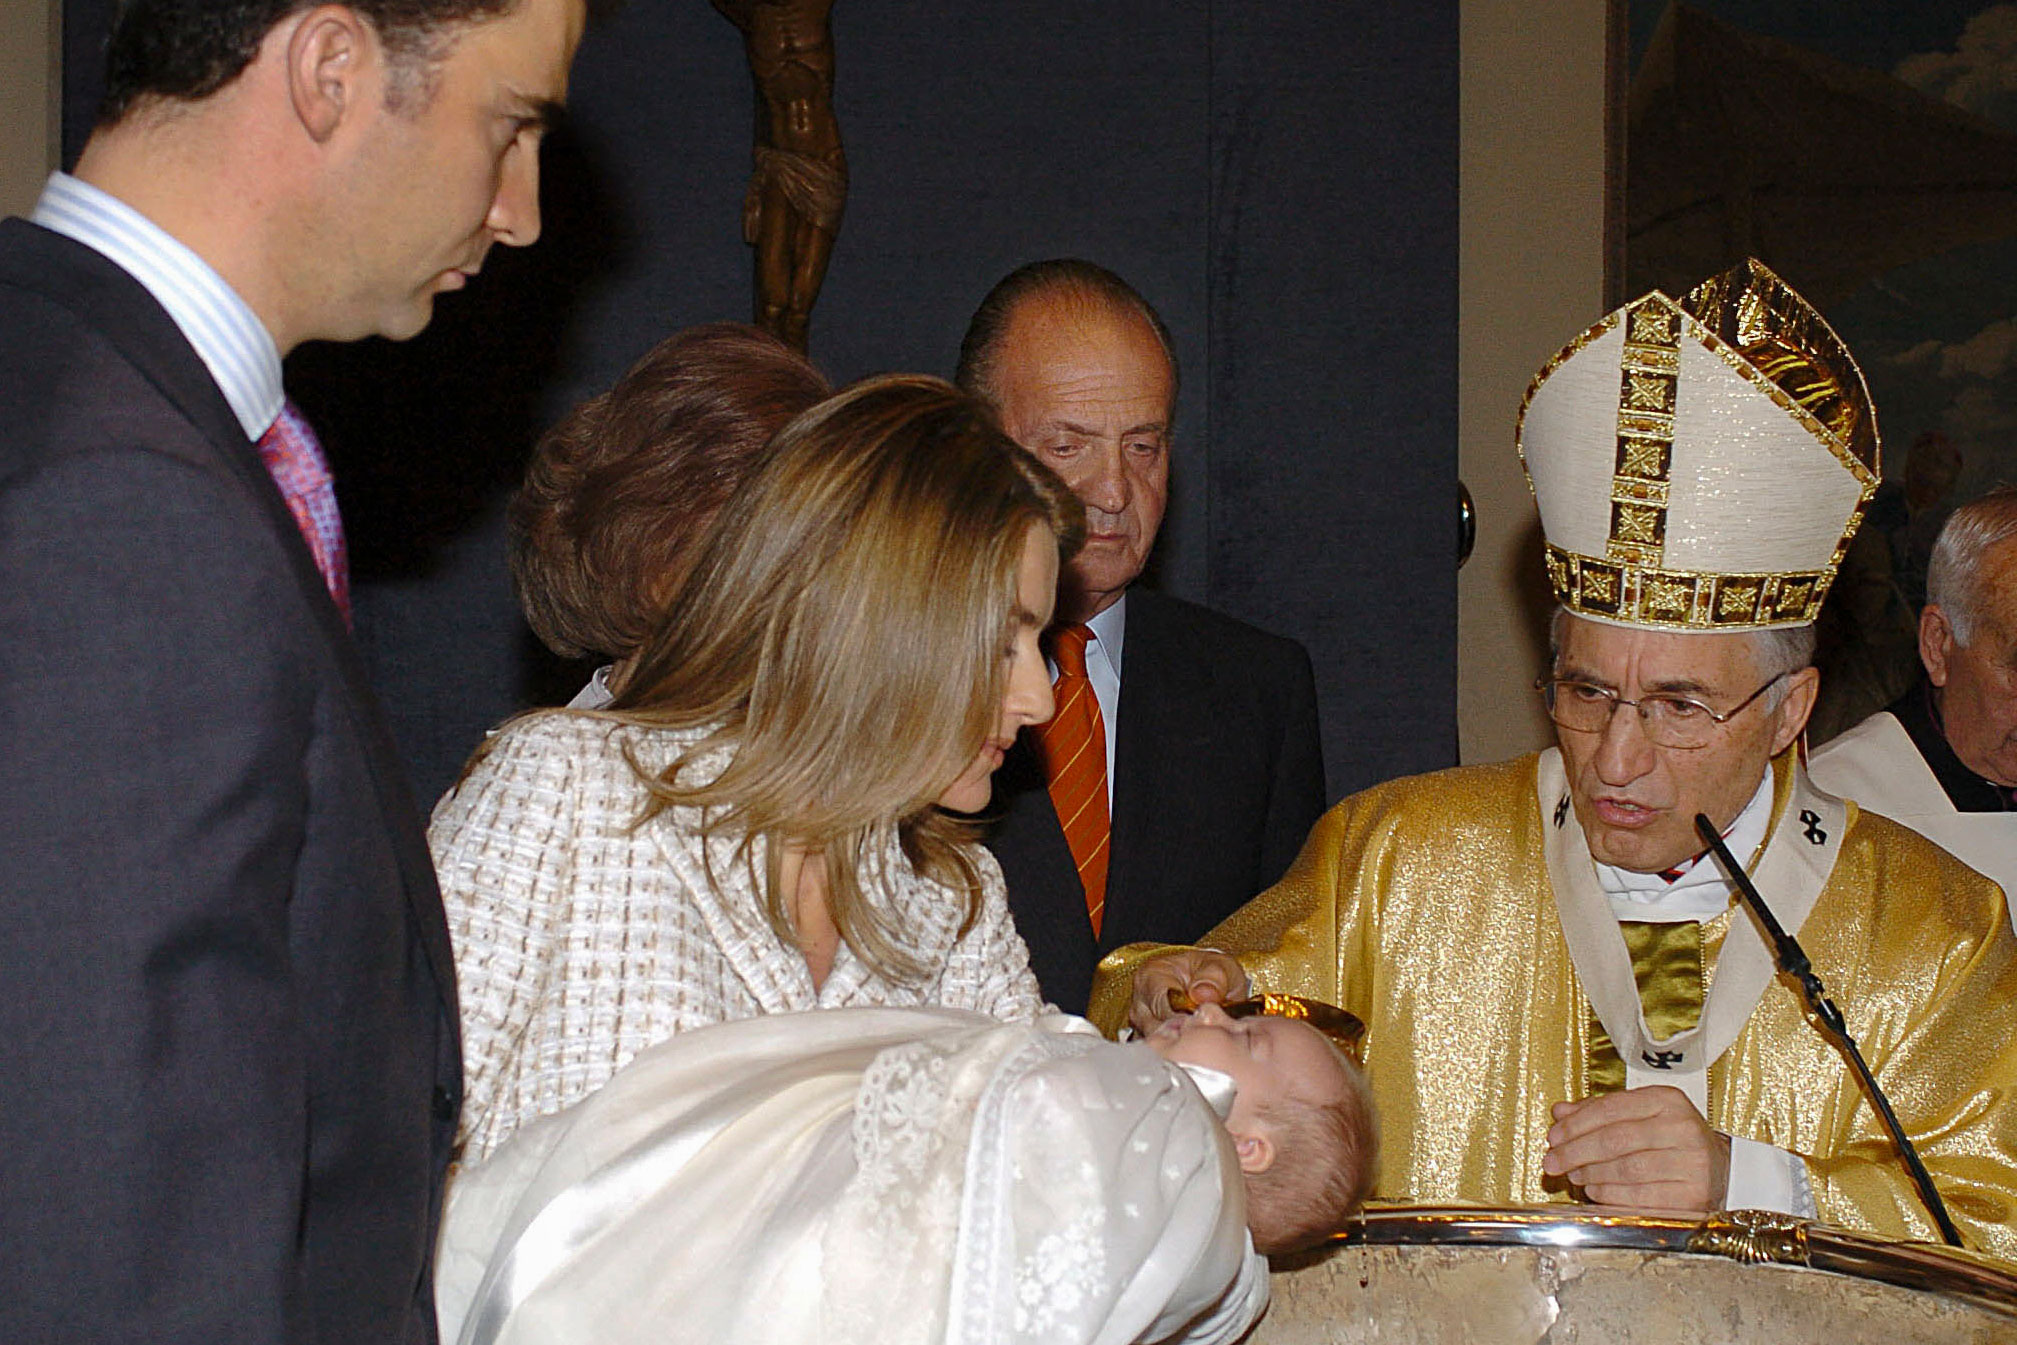 La princesa Leonor bautizada en 2006 por el cardenal Rouco Varela